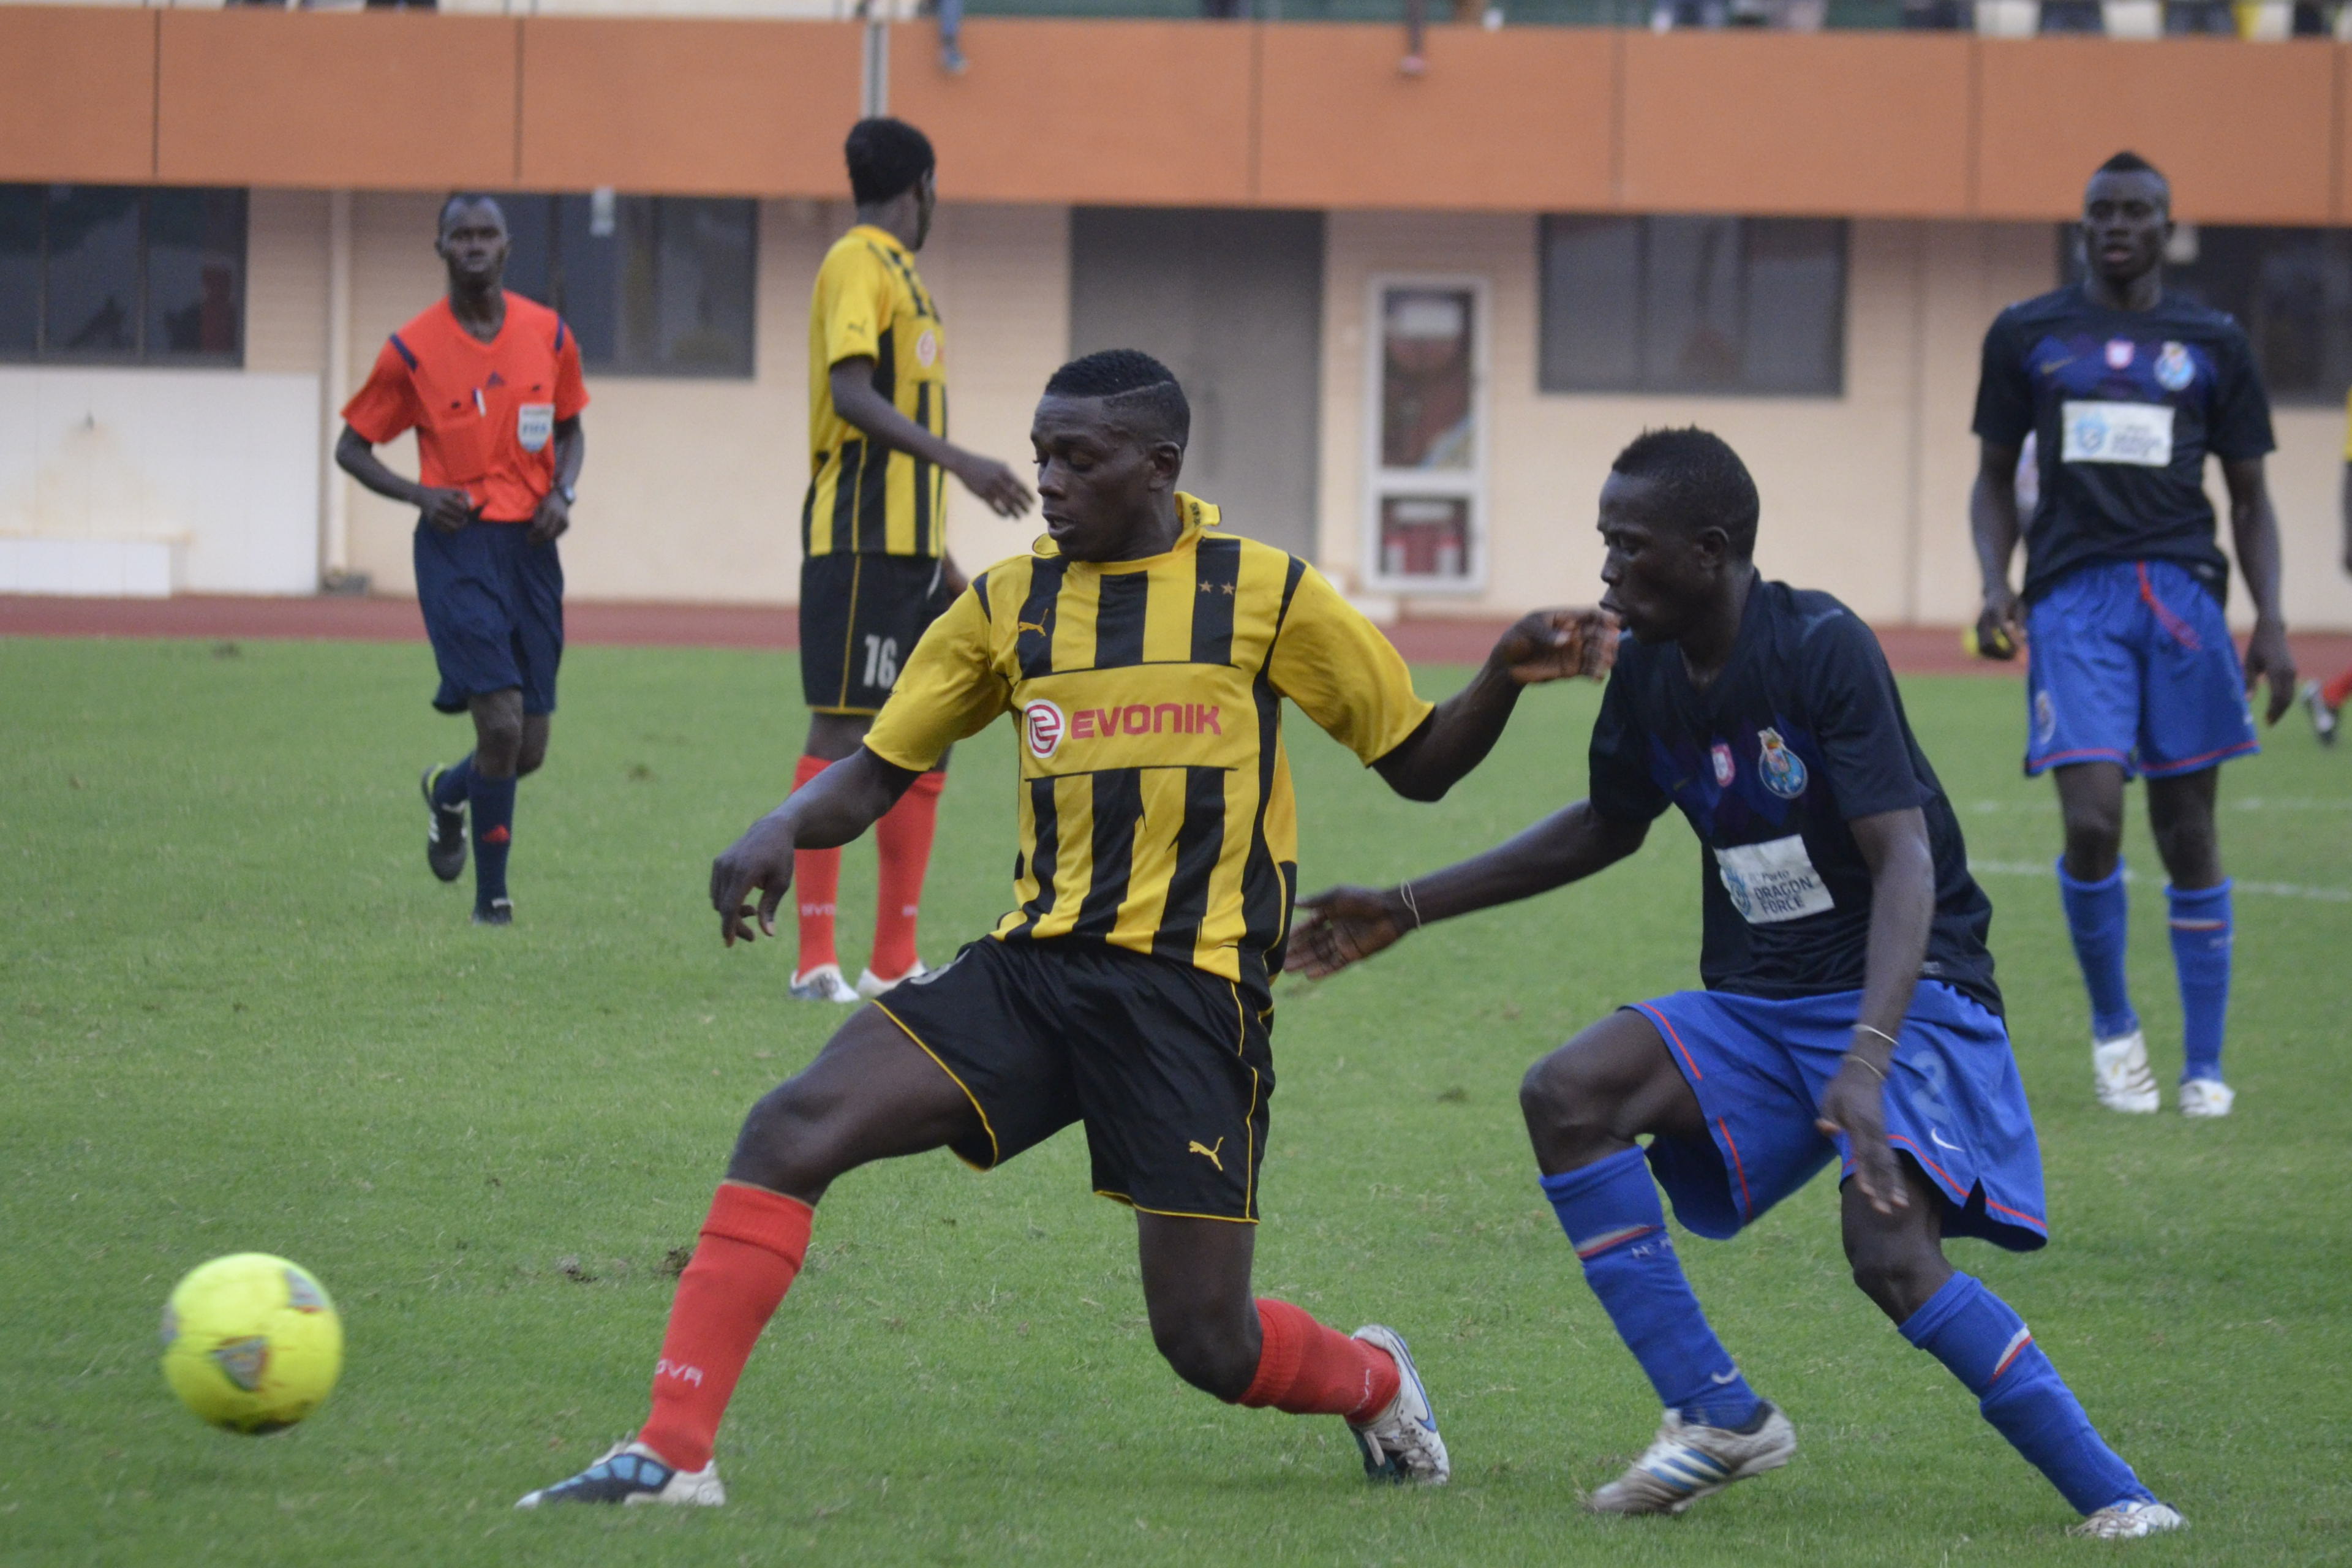 Futebol Épico - Classificação da Liga da Guiné Bissau após